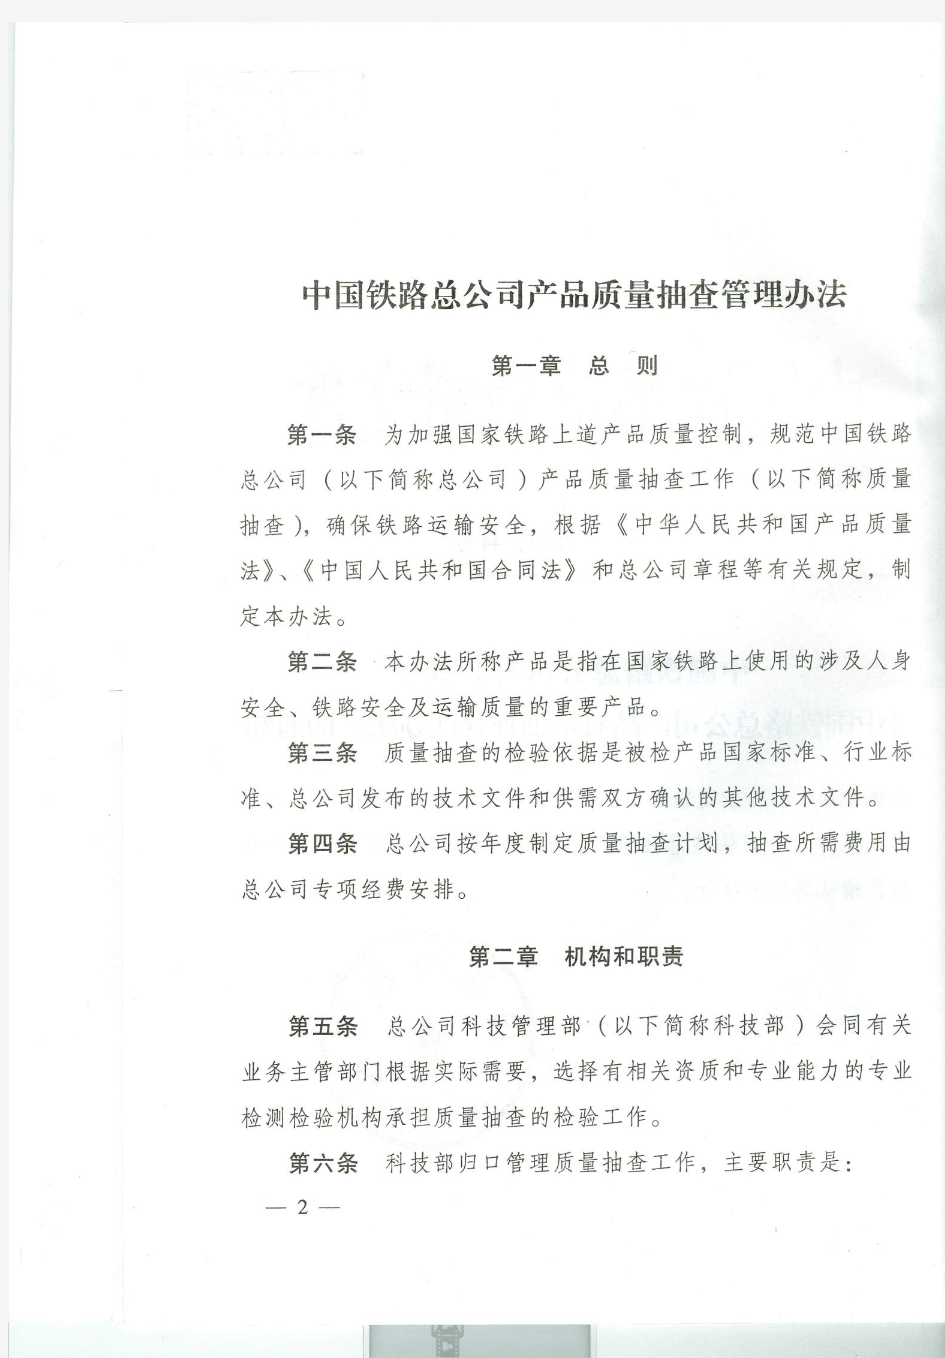 中国铁路总公司产品质量抽查管理办法-铁总科技【2014】44号